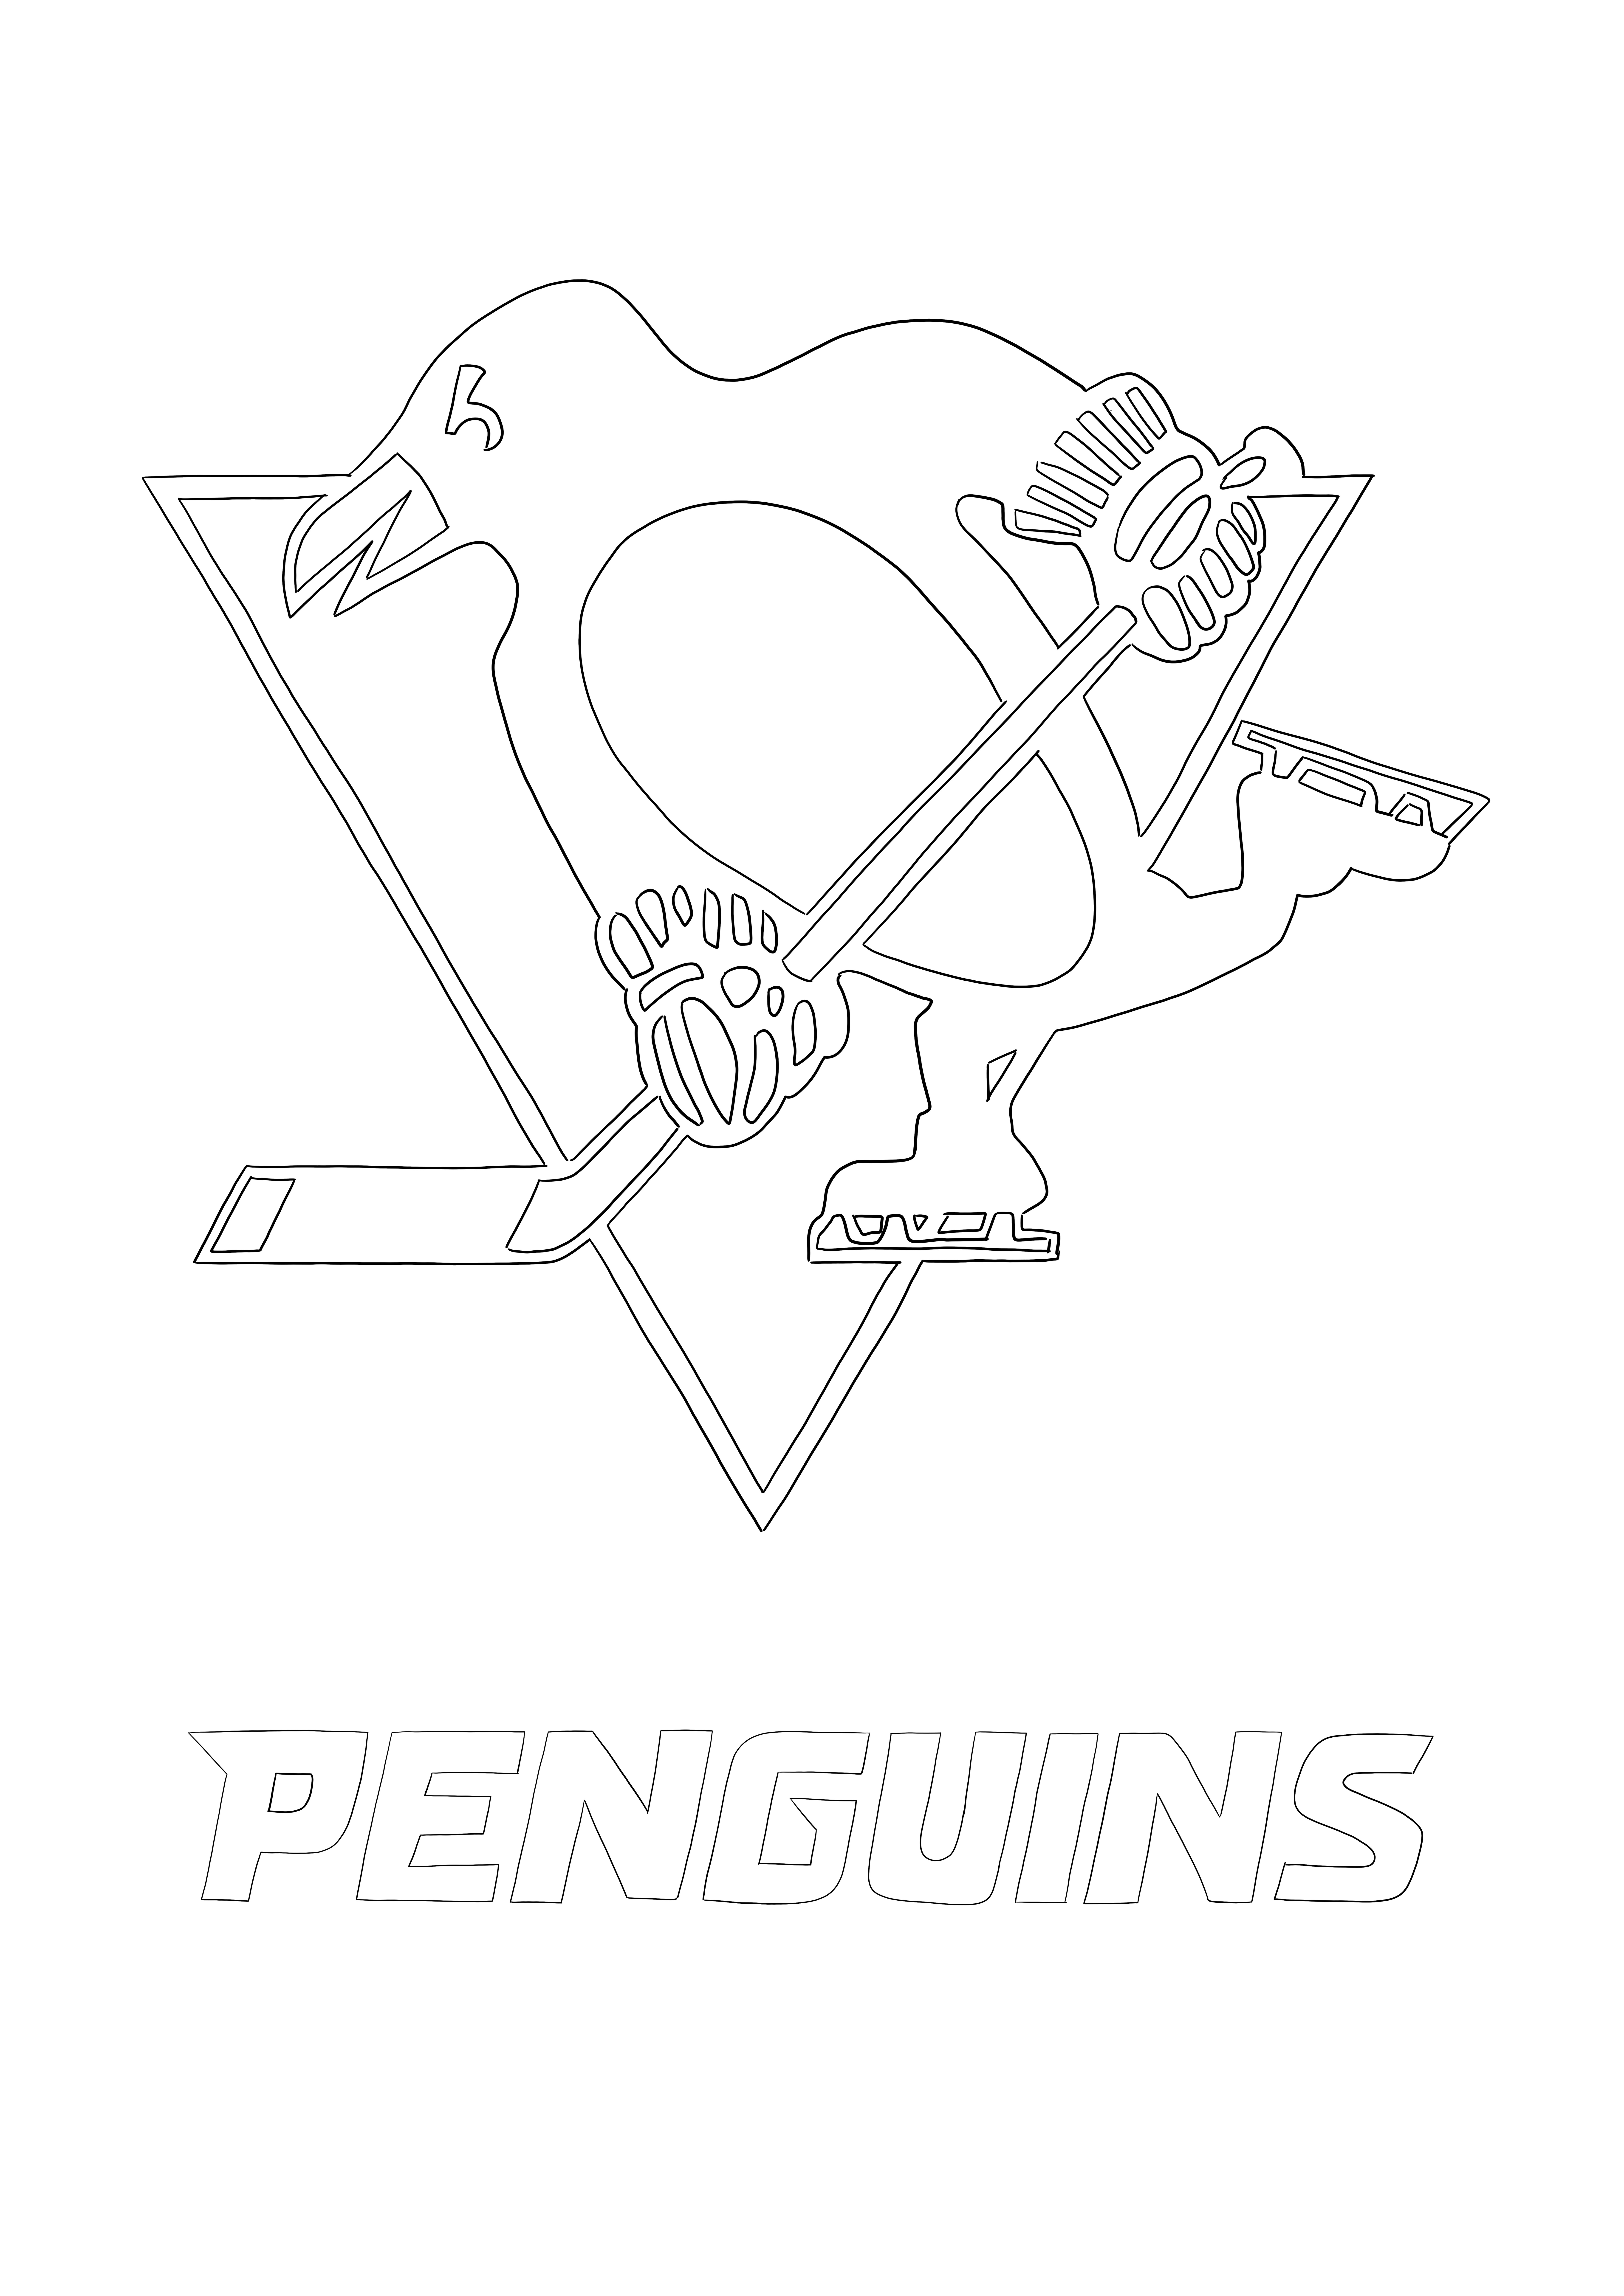 ピッツバーグ ペンギンズのロゴの無料画像をダウンロードして、子供向けに色を塗ります